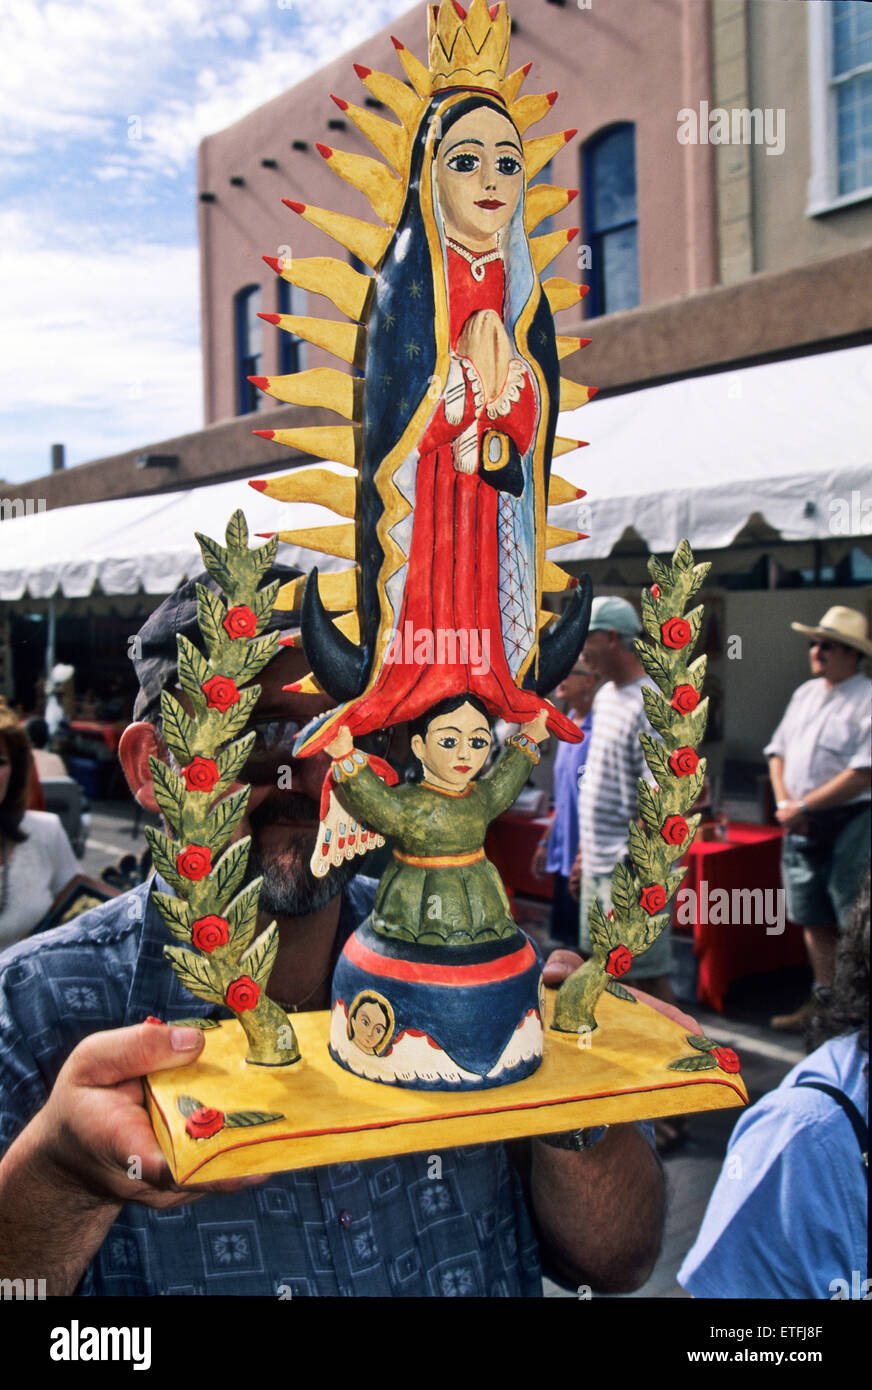 Ernie artiste palans Lujan sa sculpture en bois peint (appelé bulto en espagnol) de la Vierge de Guadalupe au cours du dimanche matin Banque D'Images